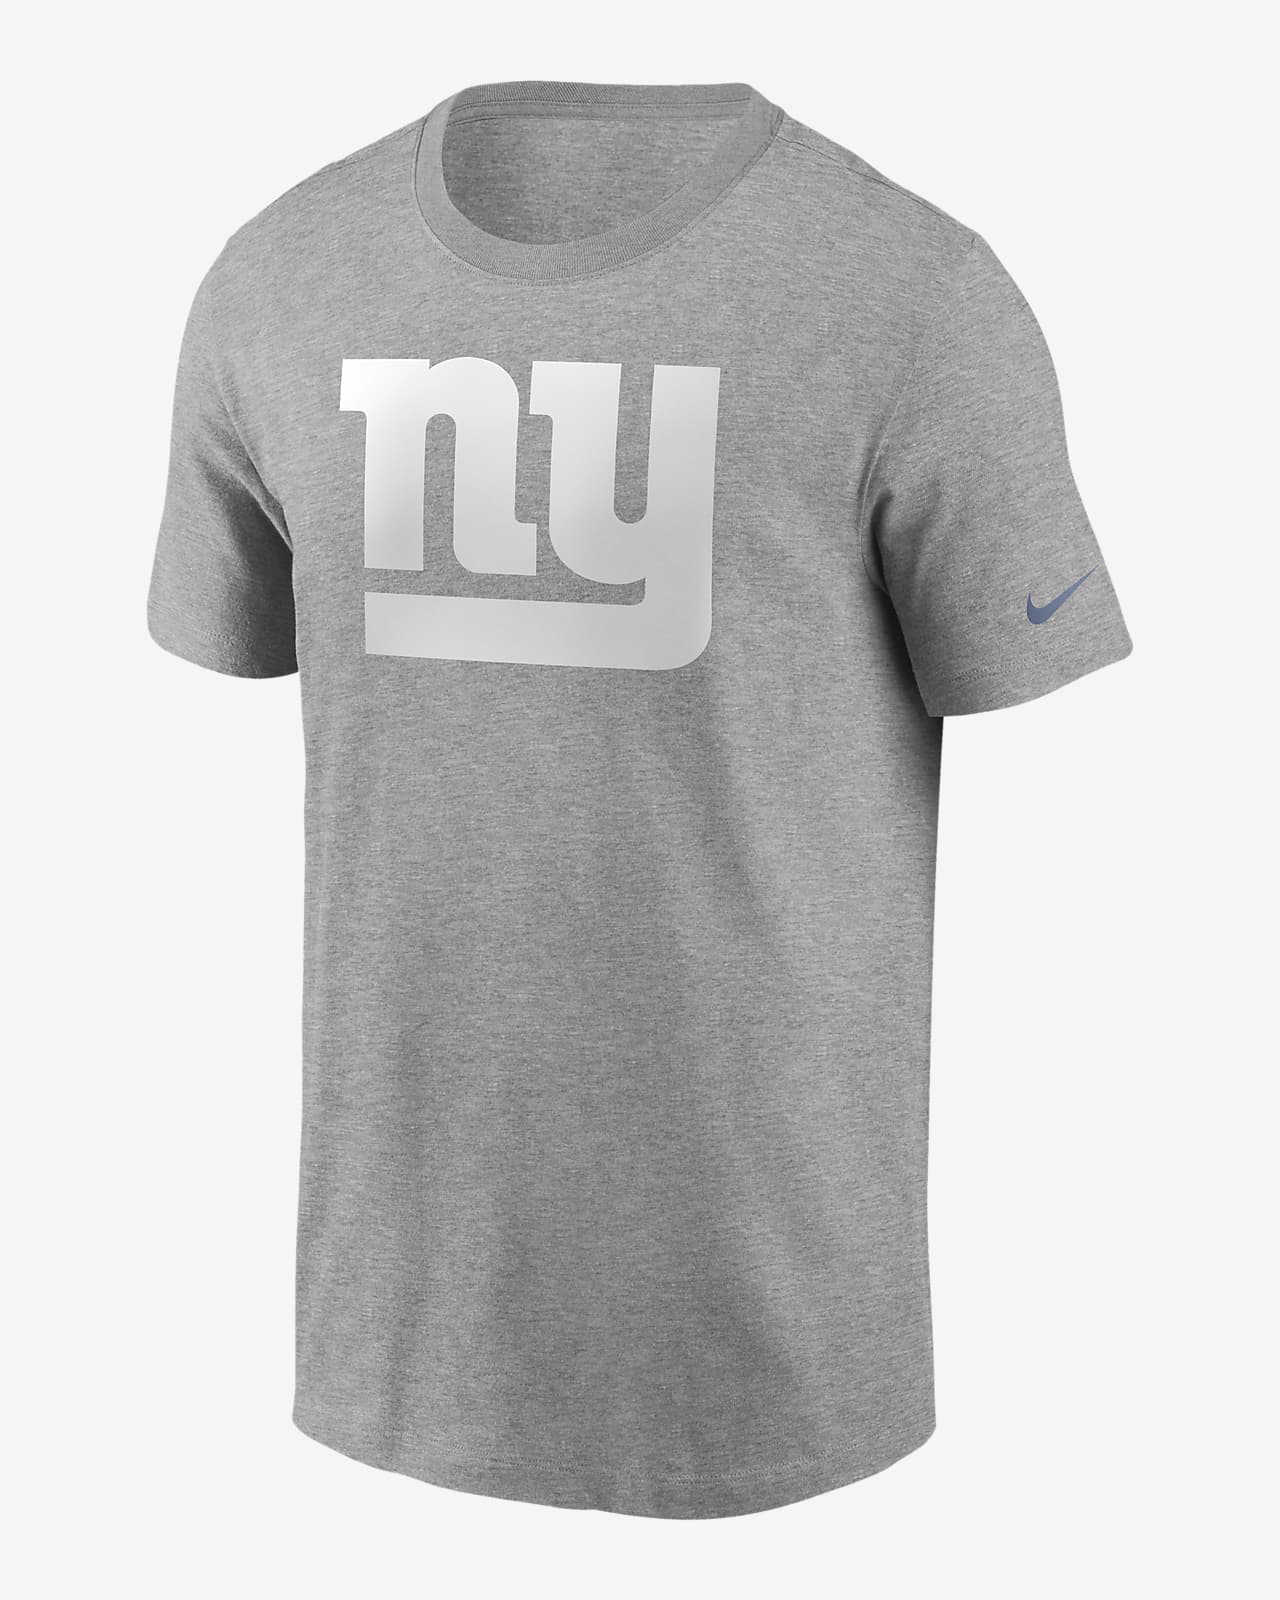 اكزيما الاصابع Nike Logo Essential (NFL New York Giants) Men's T-Shirt اكزيما الاصابع